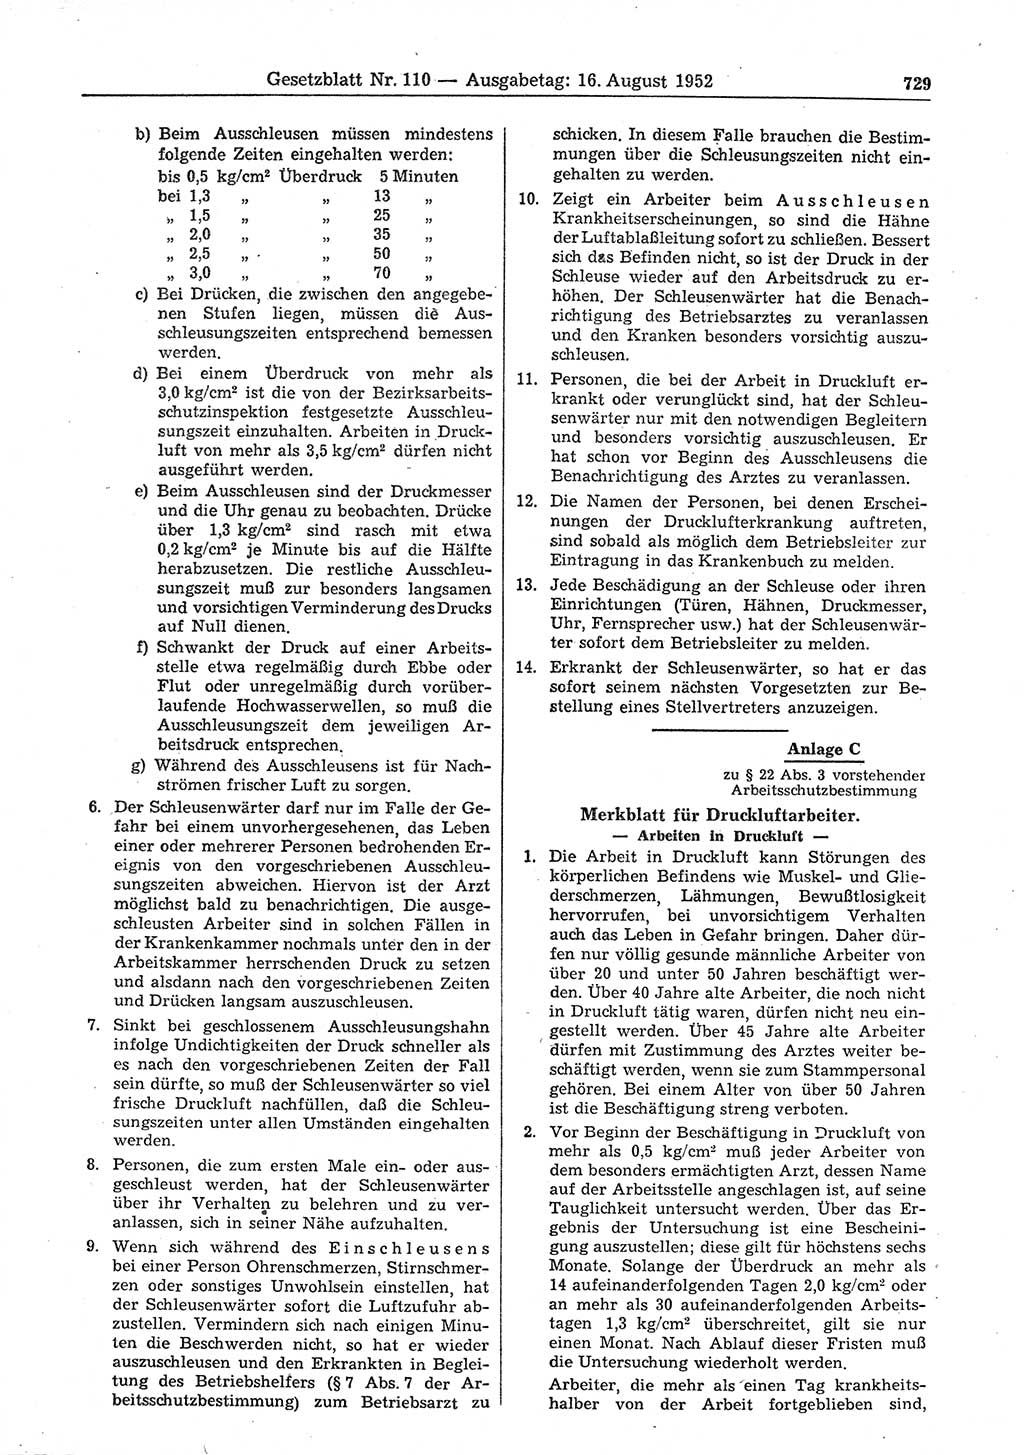 Gesetzblatt (GBl.) der Deutschen Demokratischen Republik (DDR) 1952, Seite 729 (GBl. DDR 1952, S. 729)